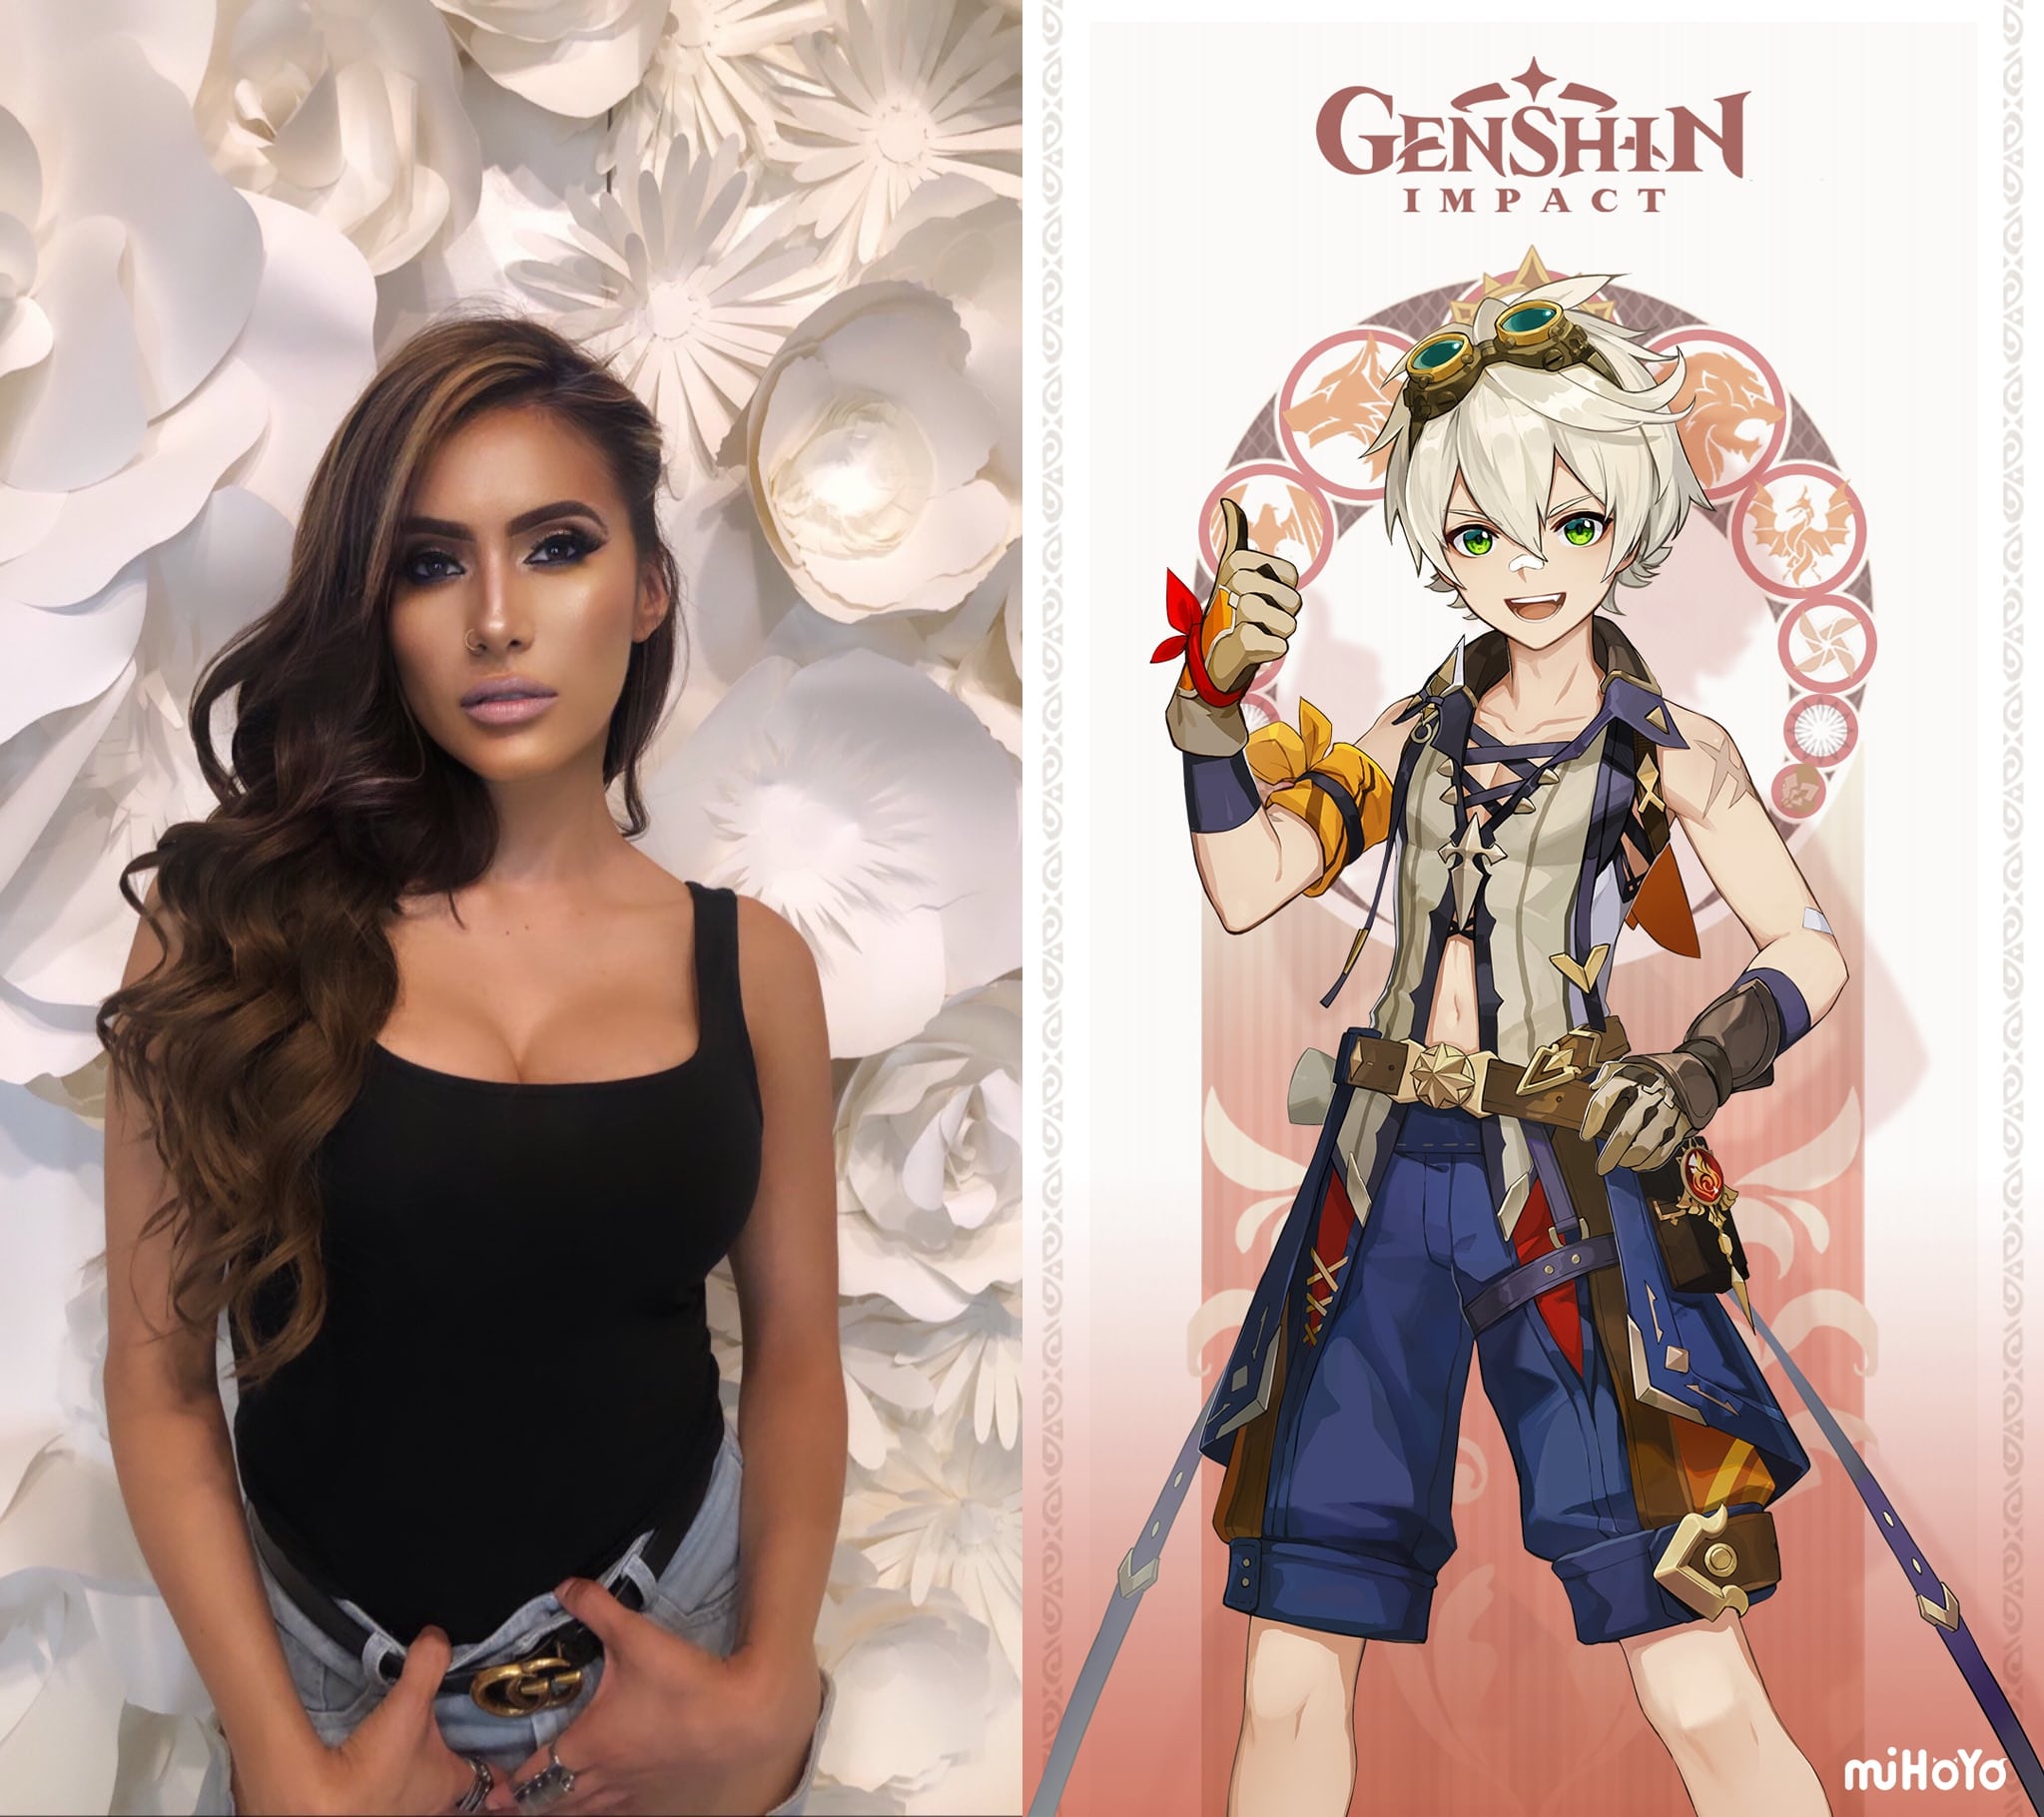 Ontmoet Genshin Impact-stemactrice tijdens Heroes Made in Asia in Gorinchem